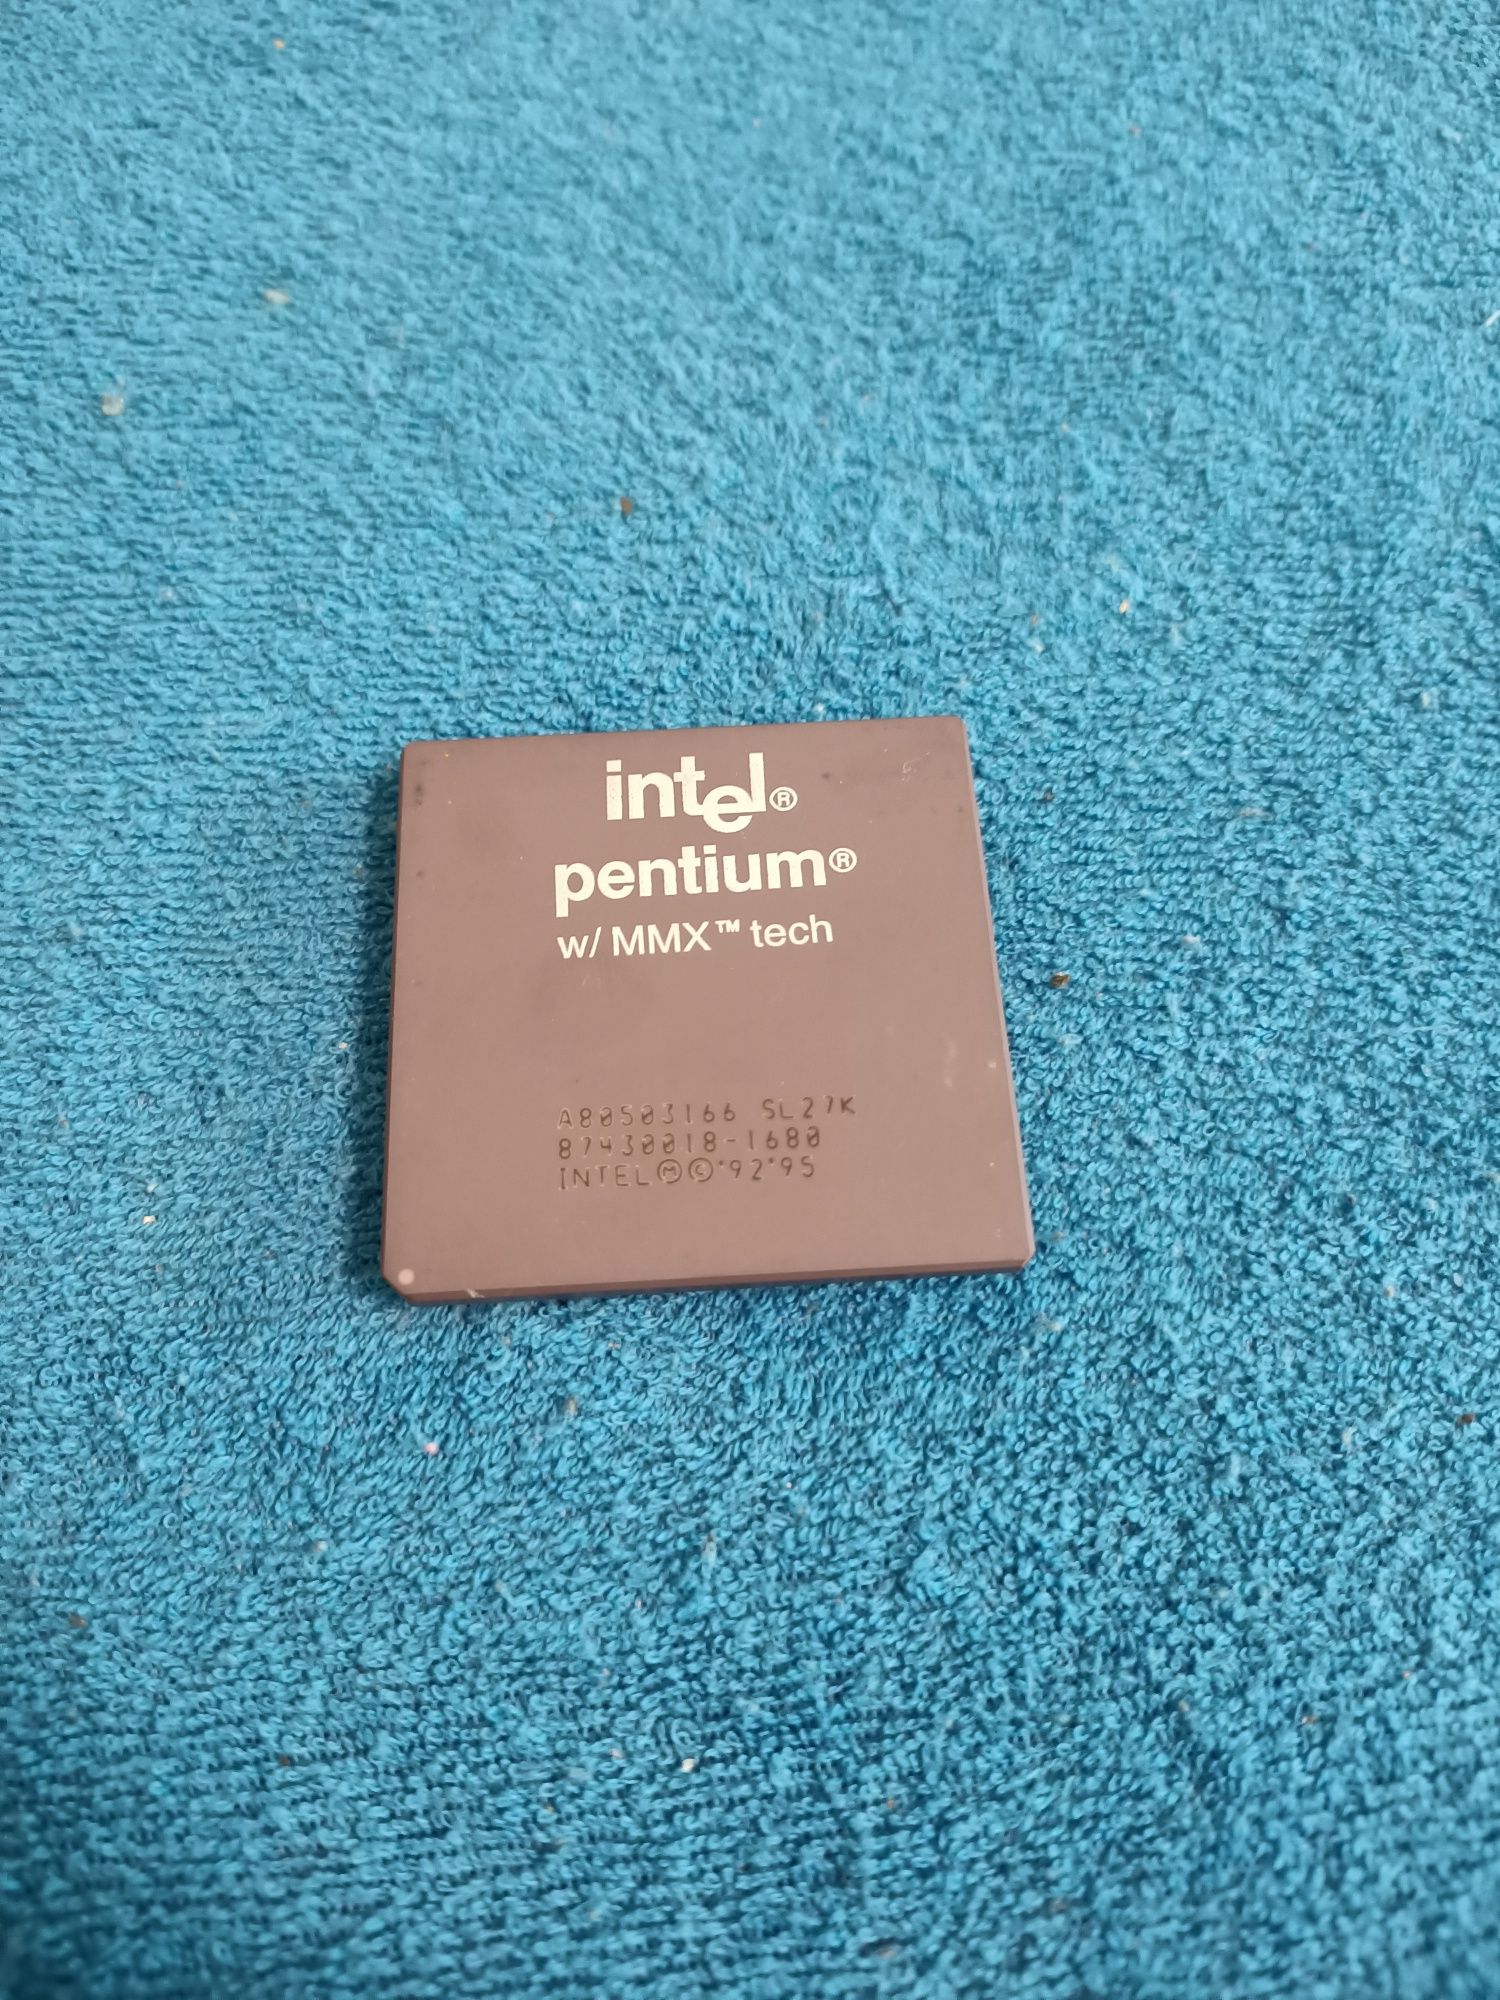 Retro procesor Intel Pentium w/mmx